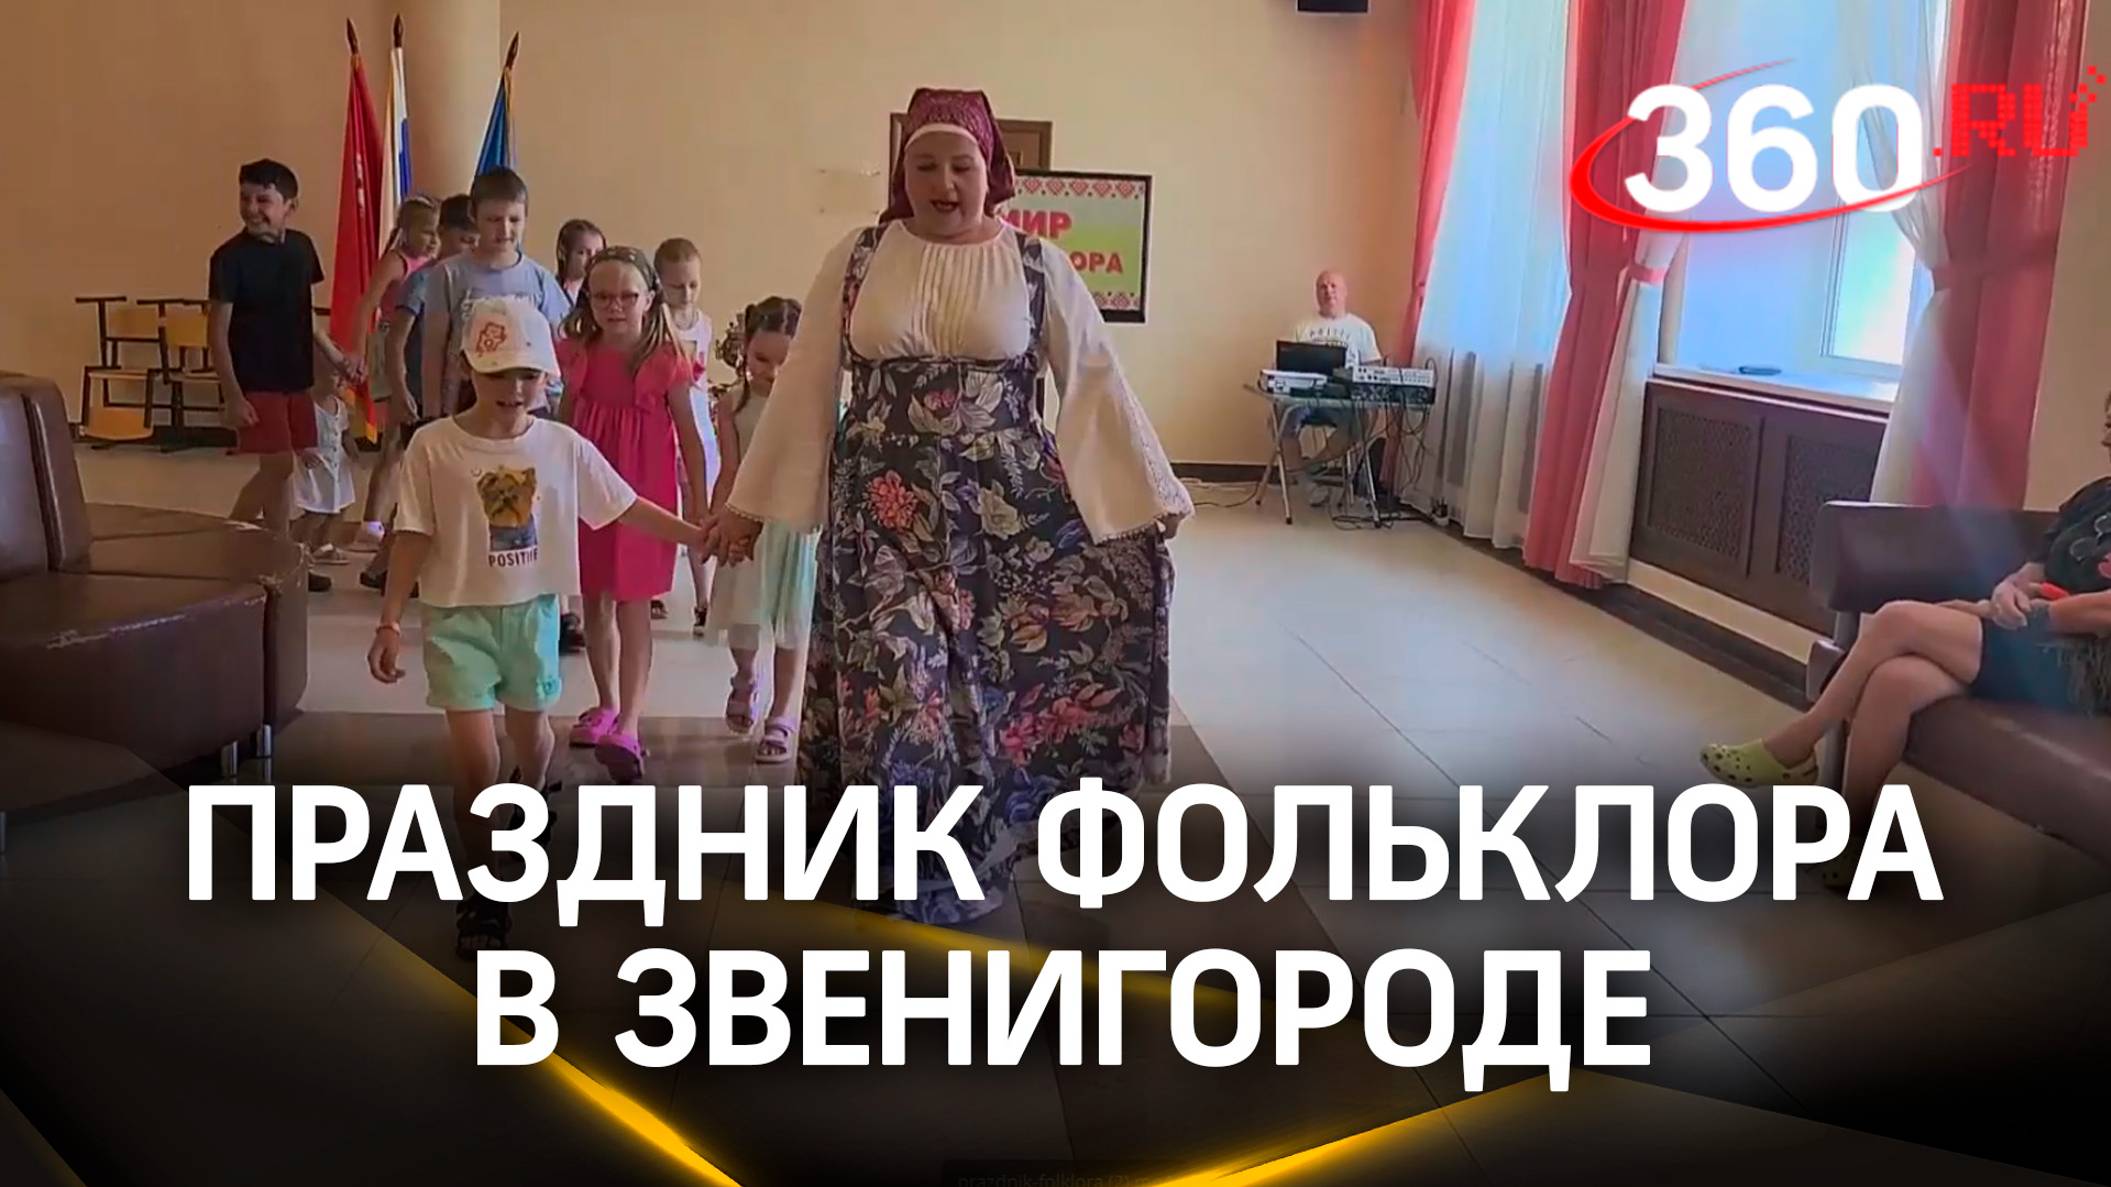 В лучших традициях: праздник фольклора прошёл в Звенигороде